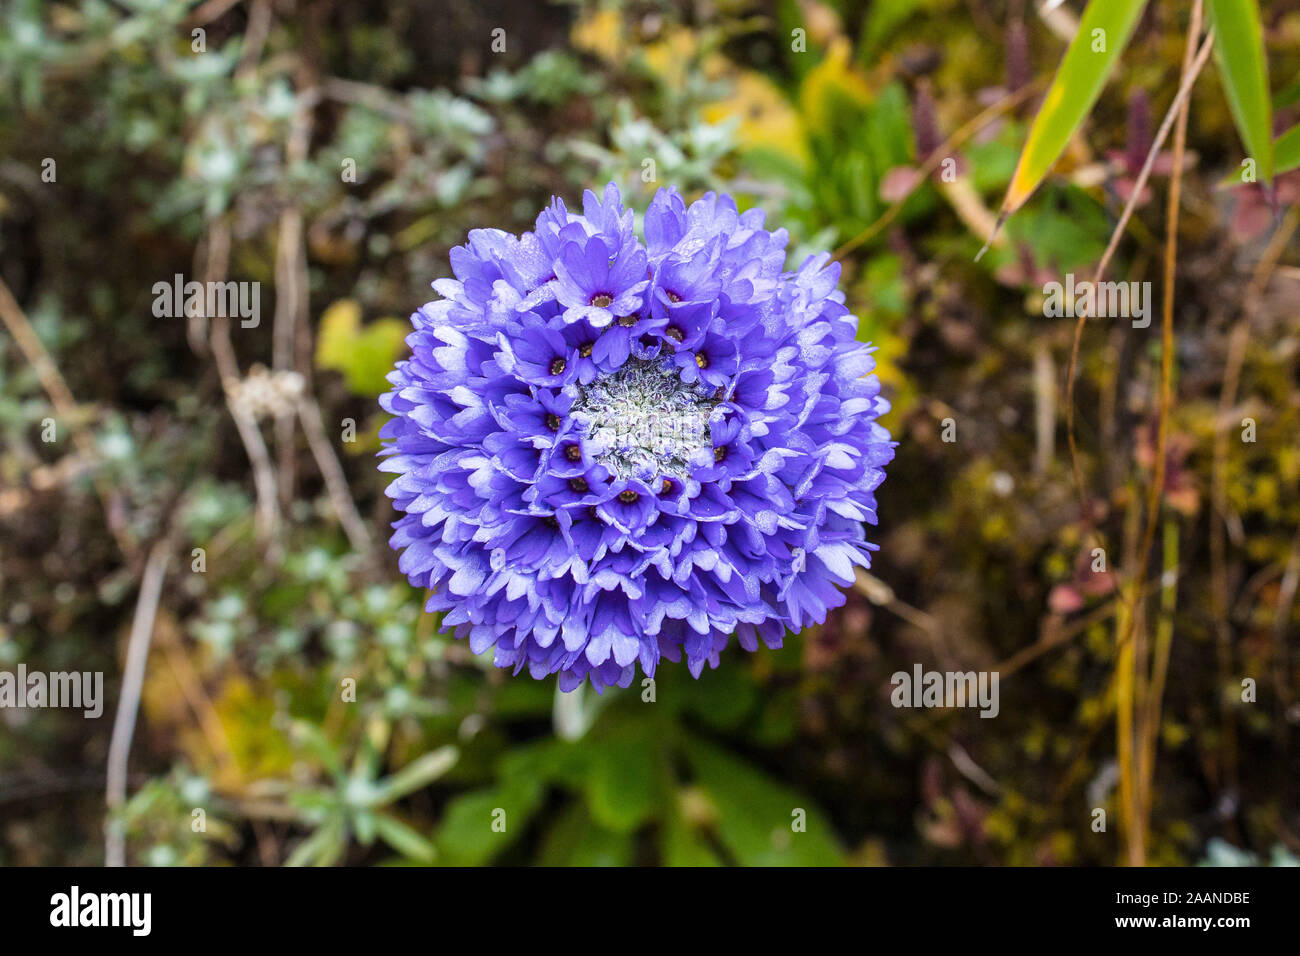 Primula glomerata, plantes fleurs alpines de Primulaceae famille, habituellement trouvés dans les montagnes de l'Himalaya à une altitude supérieure à 3000m Banque D'Images